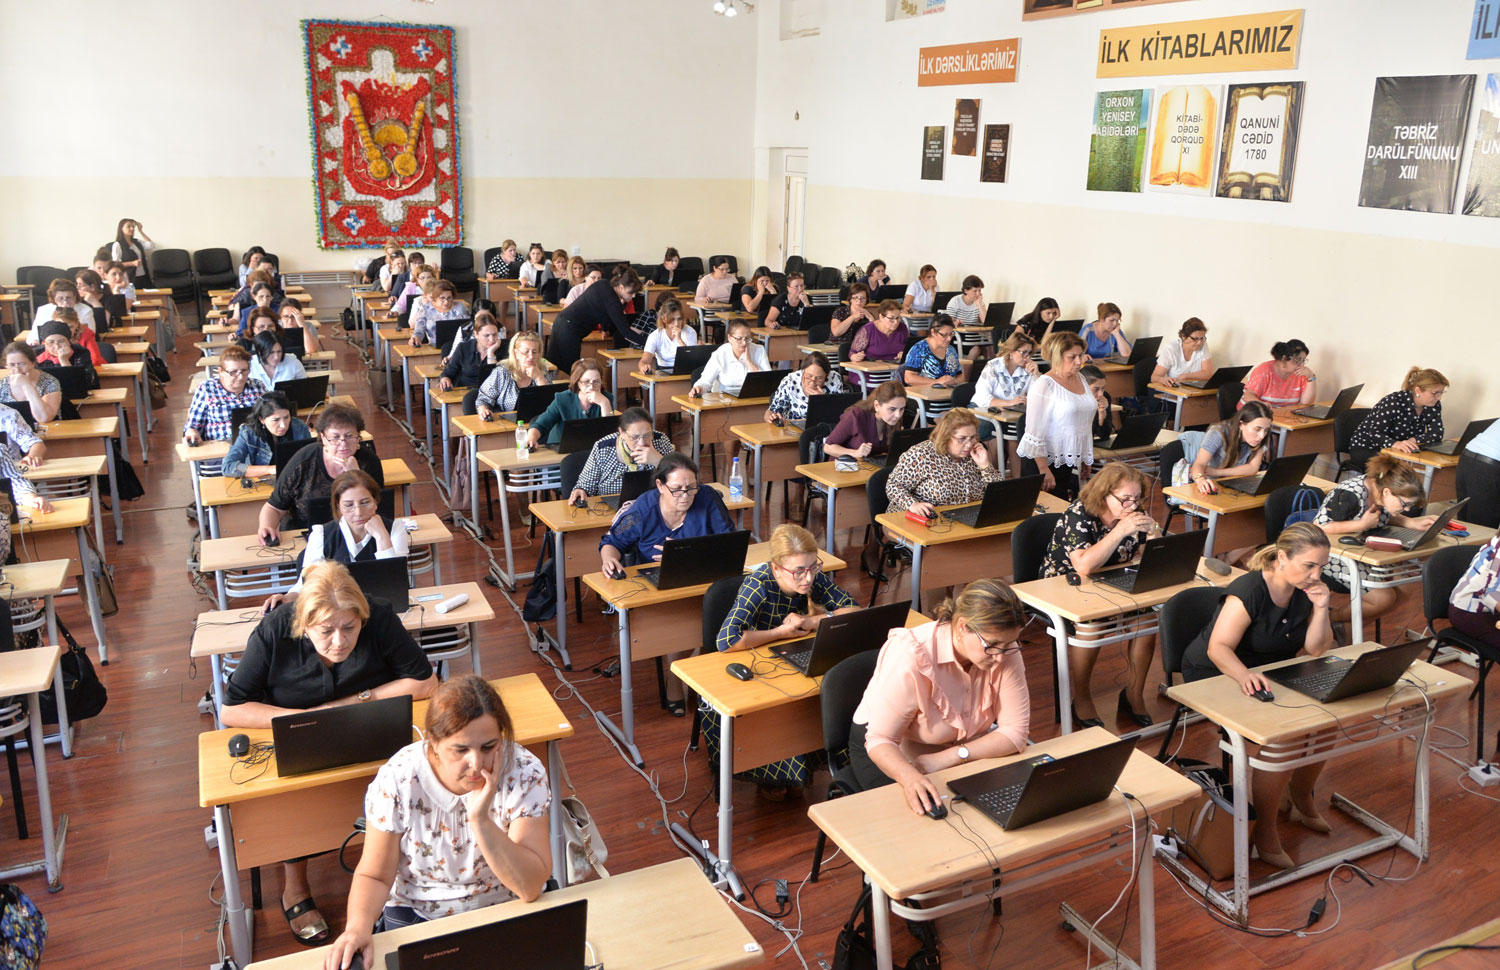 Названы результаты собеседований в рамках трудоустройства учителей в Азербайджане